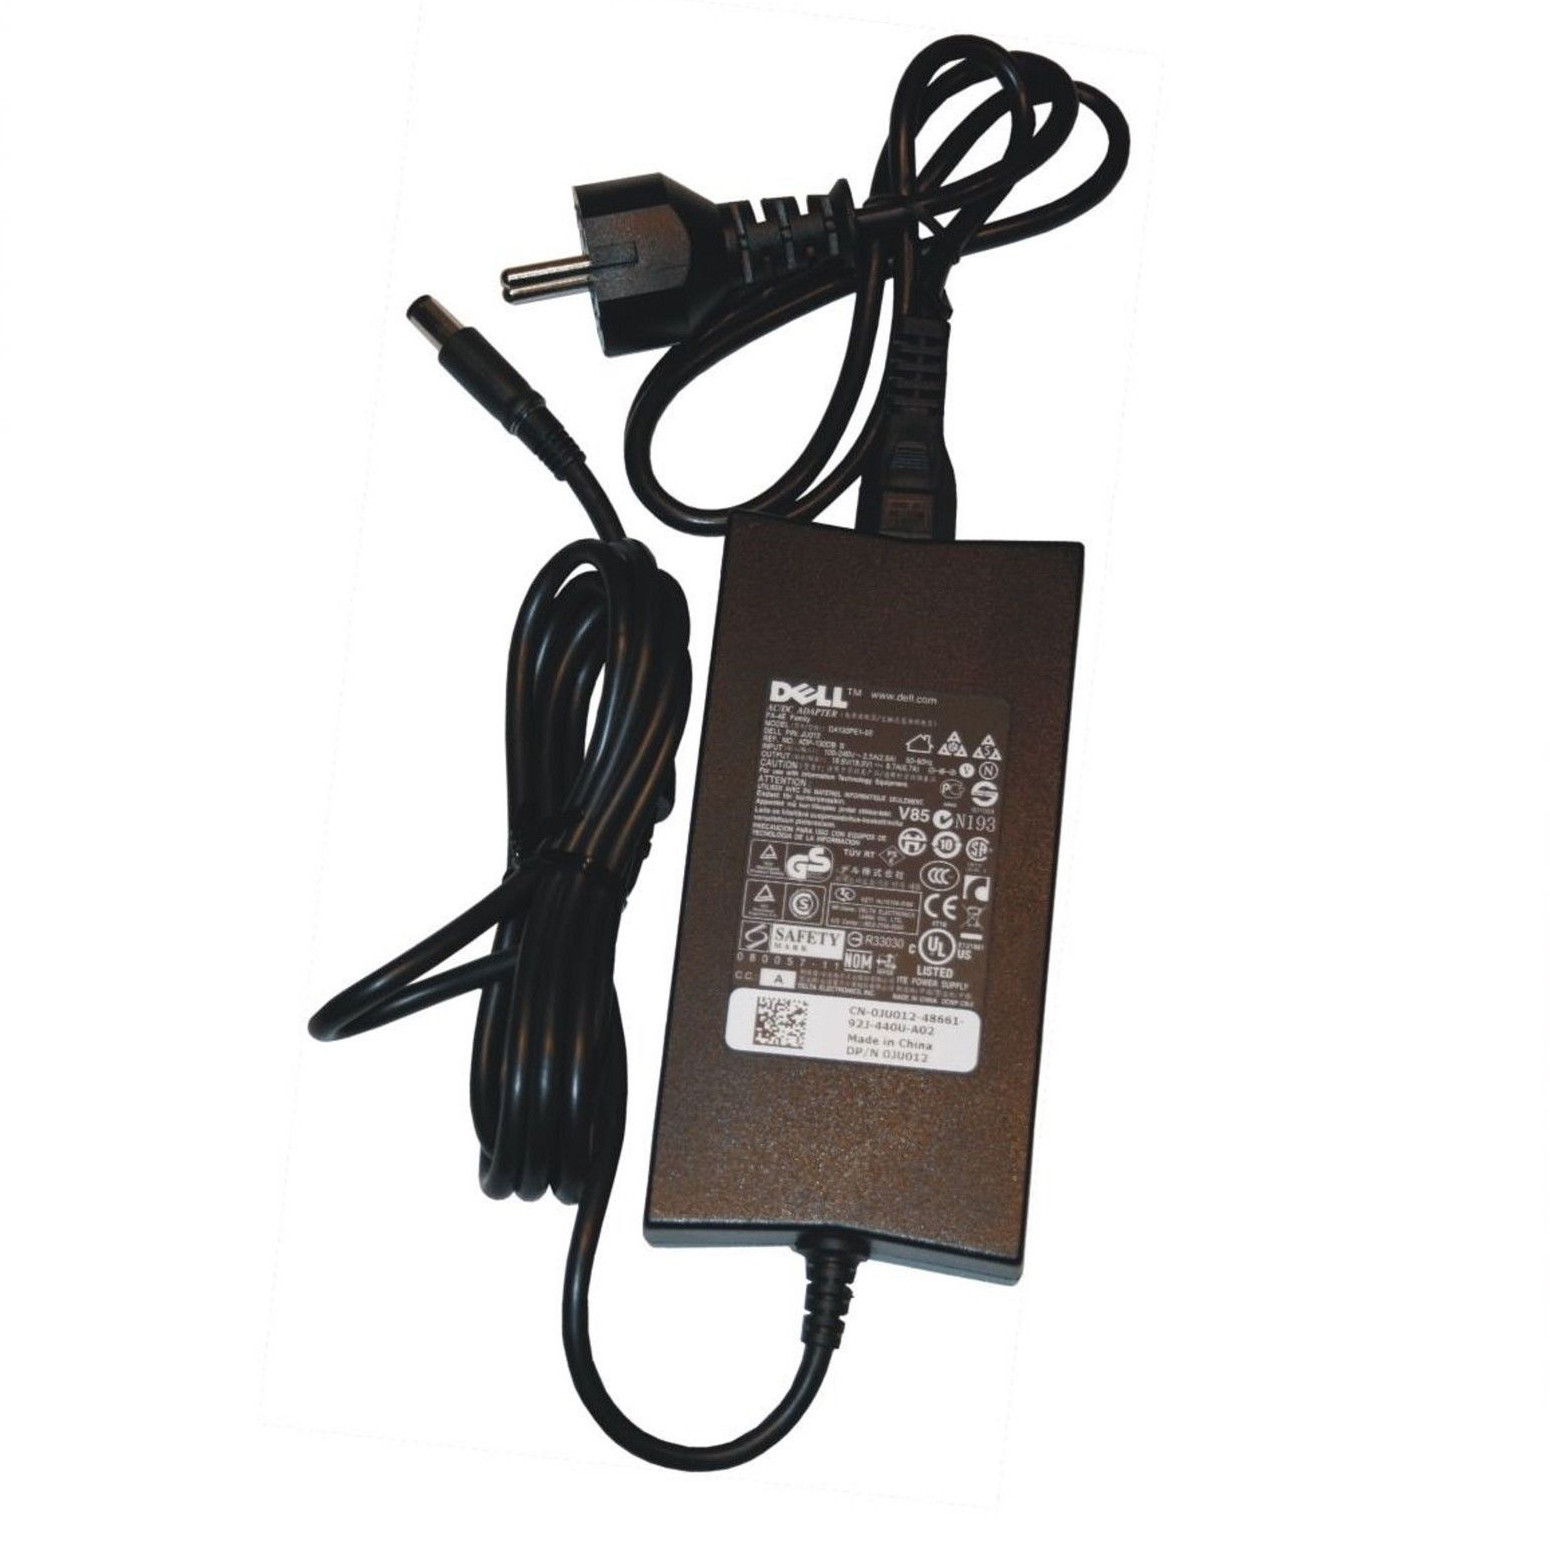 Chargeur de PC portable performant pour votre ordinateur -  Batteriedeportable